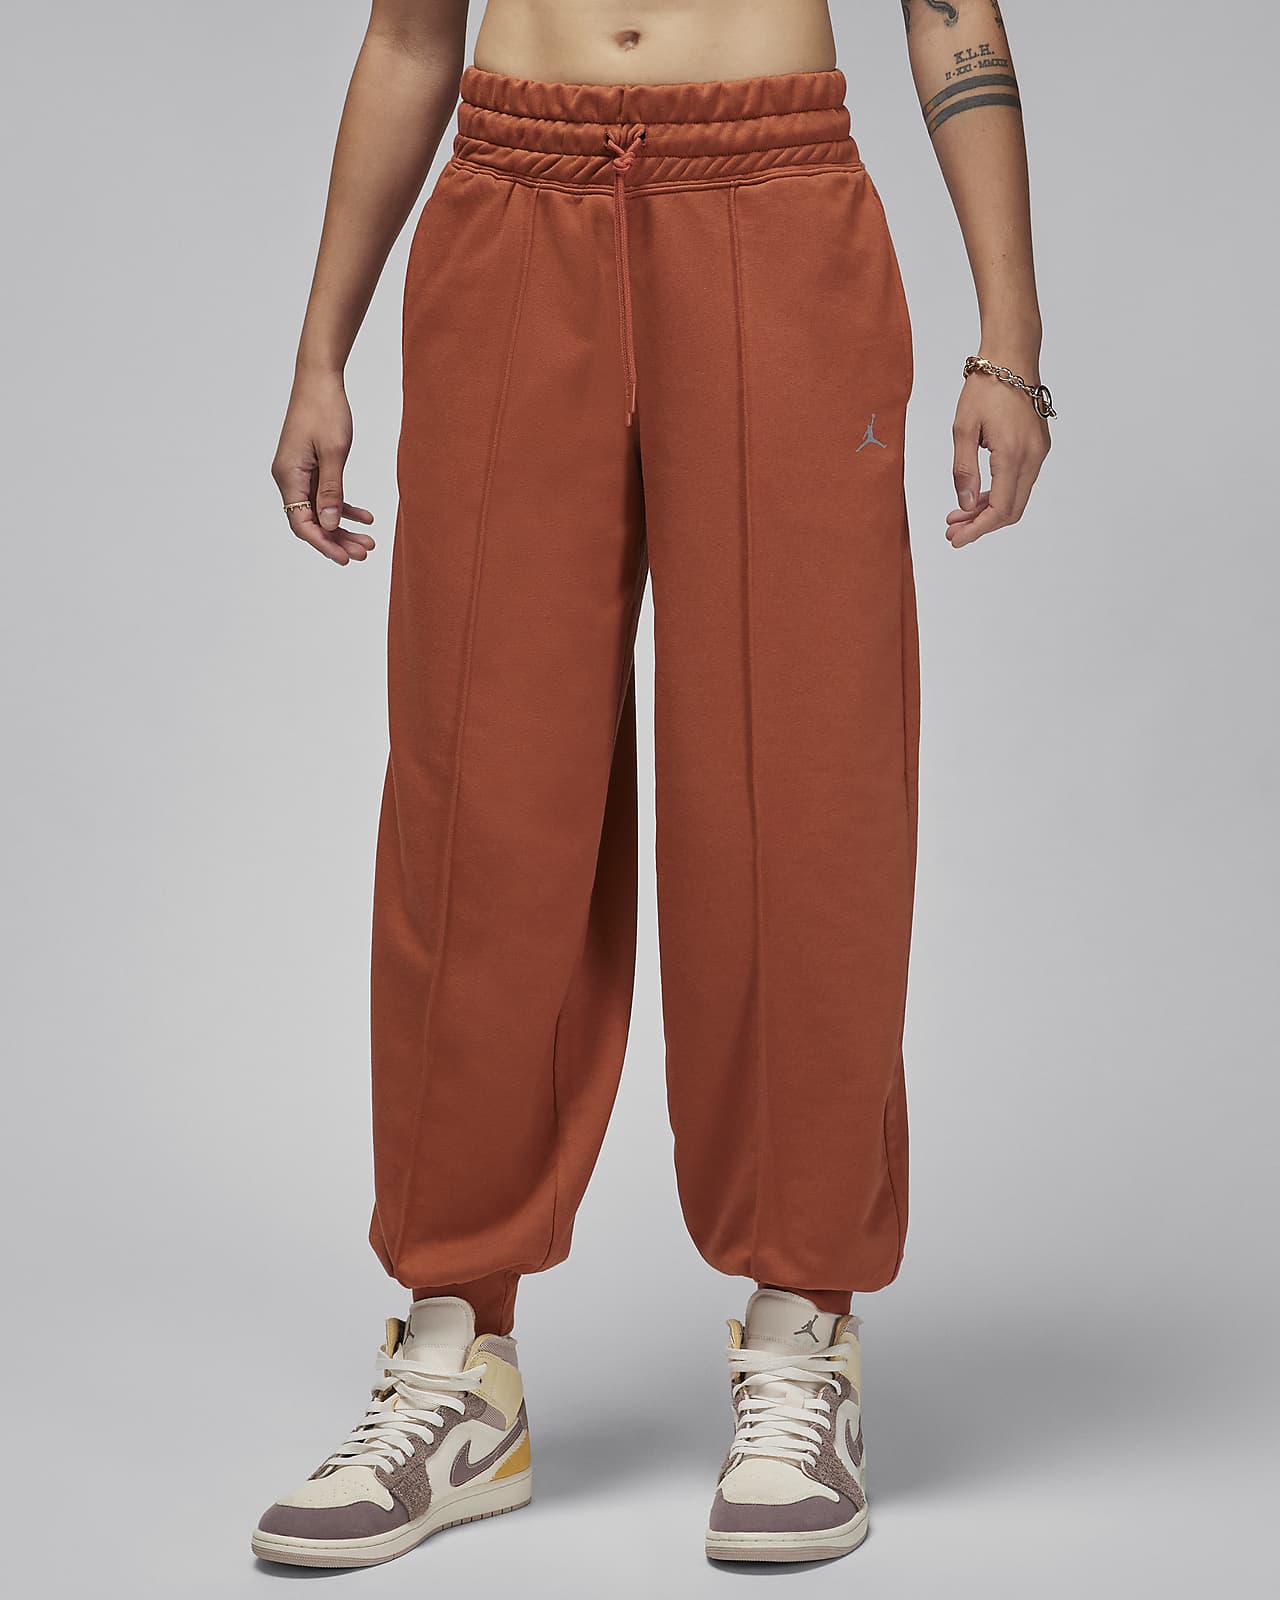 Dámské flísové kalhoty Jordan Sport s grafickým motivem